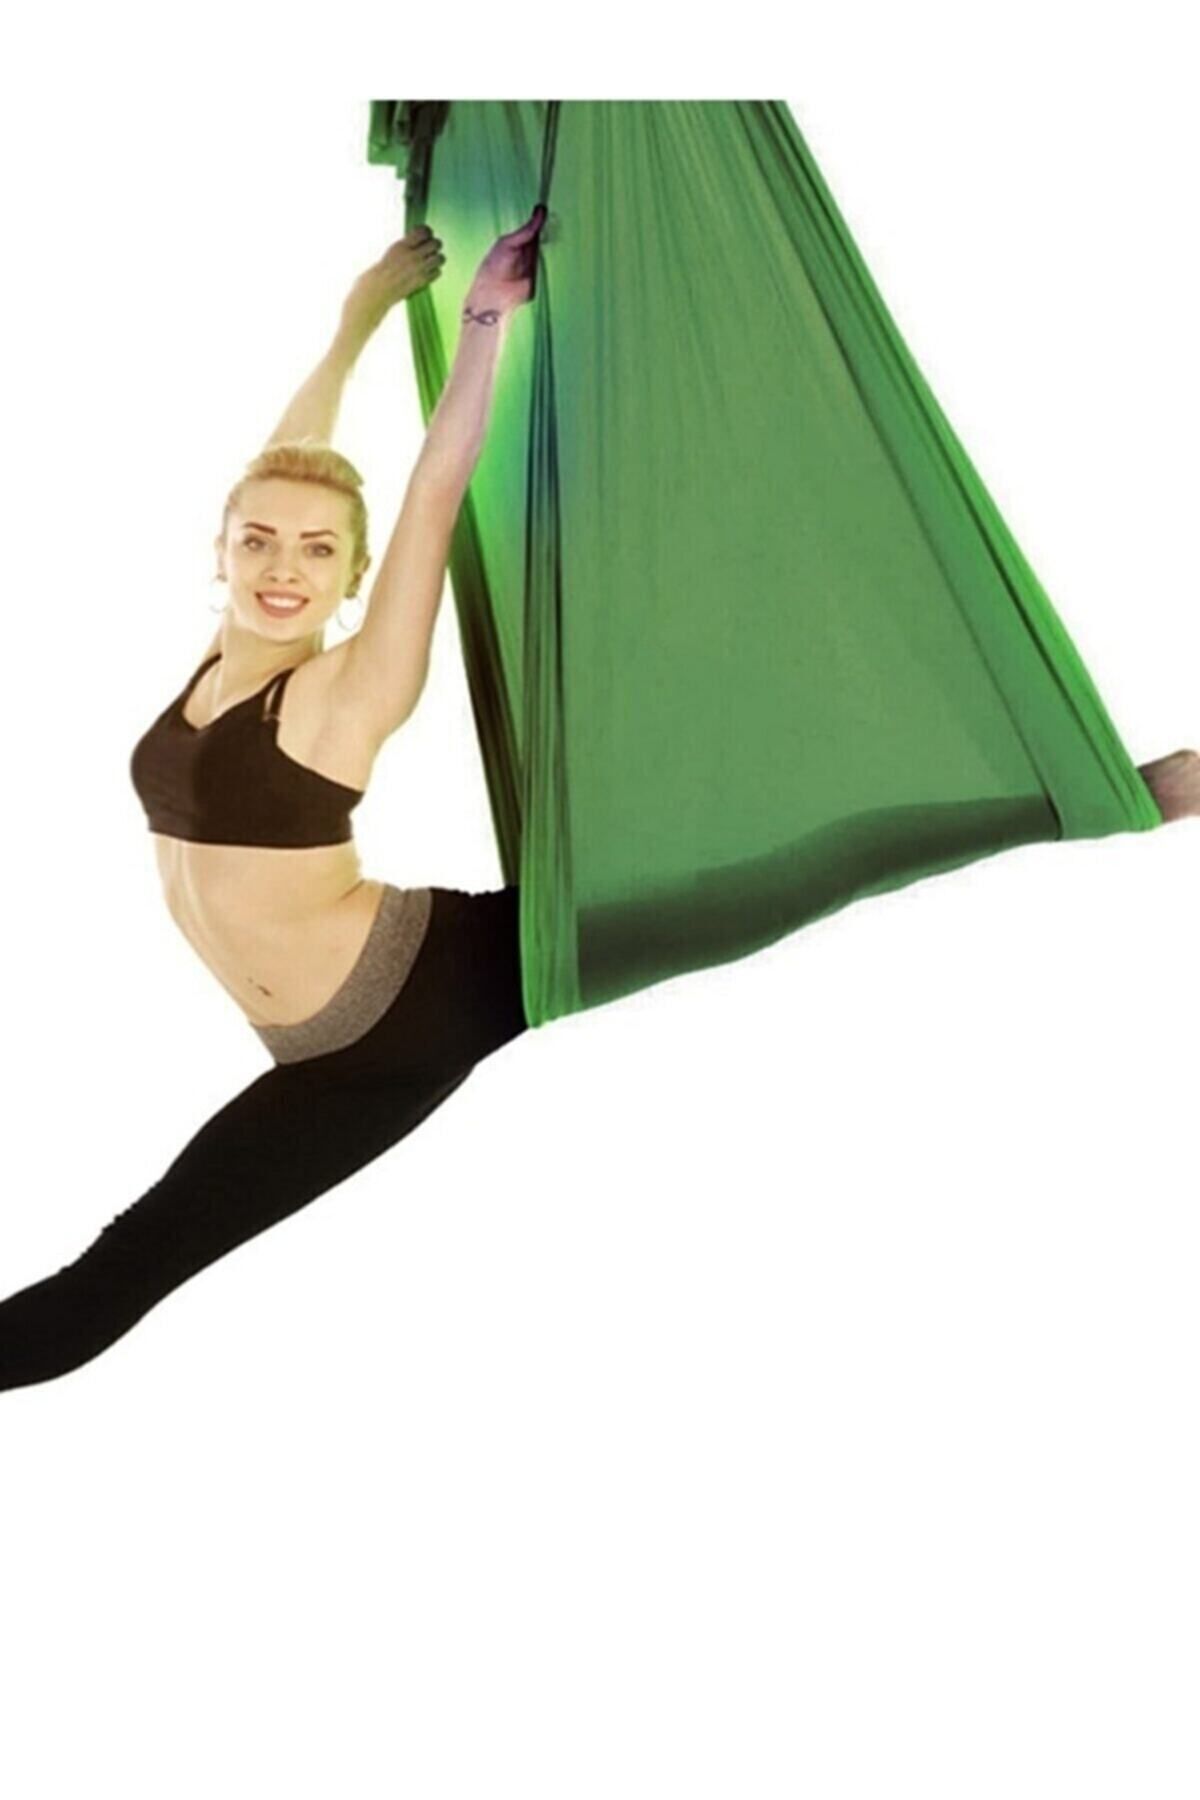 Bundera Yoga Fly Hamağı Tavana Askılı Yer Çekimsiz Fitness Pilates Hava Akrobasi Egzersiz Denge Aleti